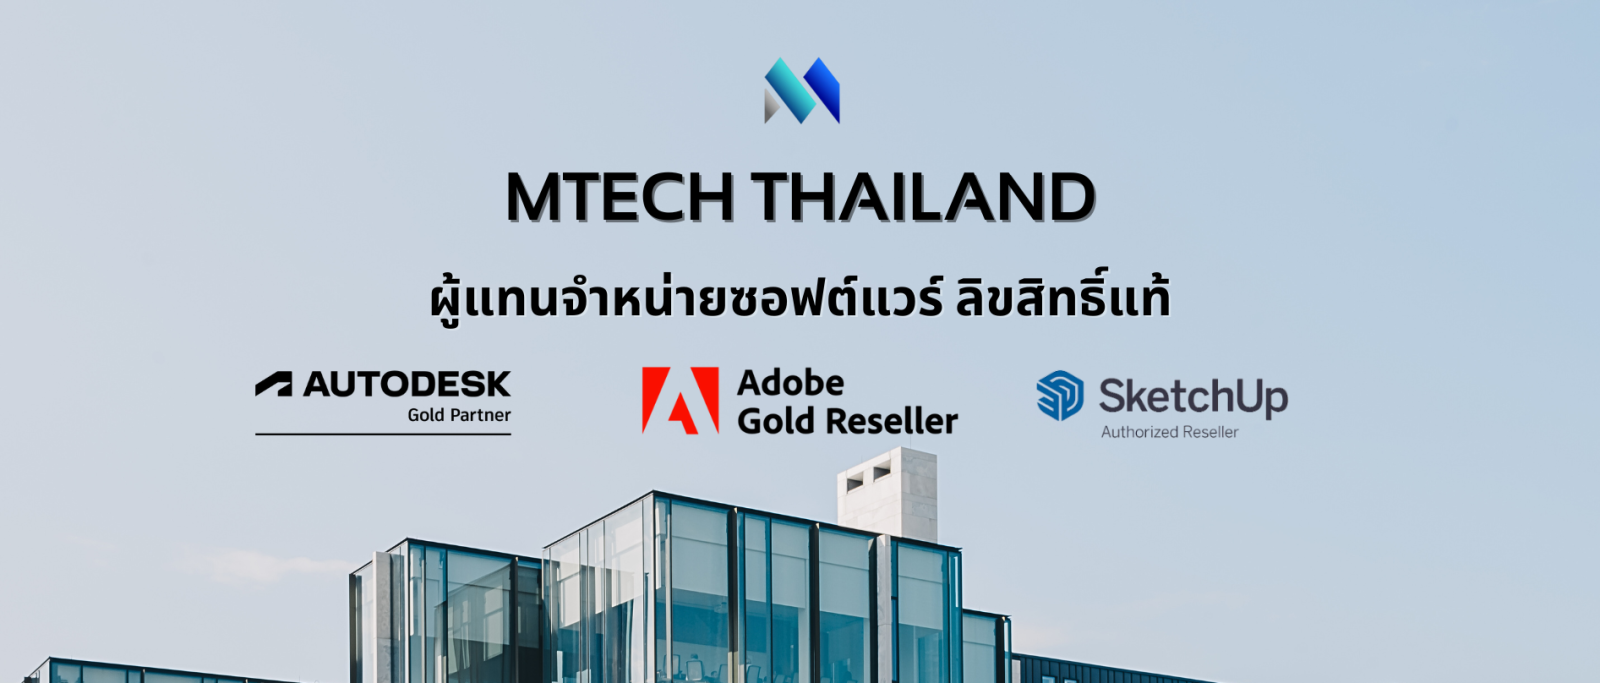 MTECH Thailand (6)